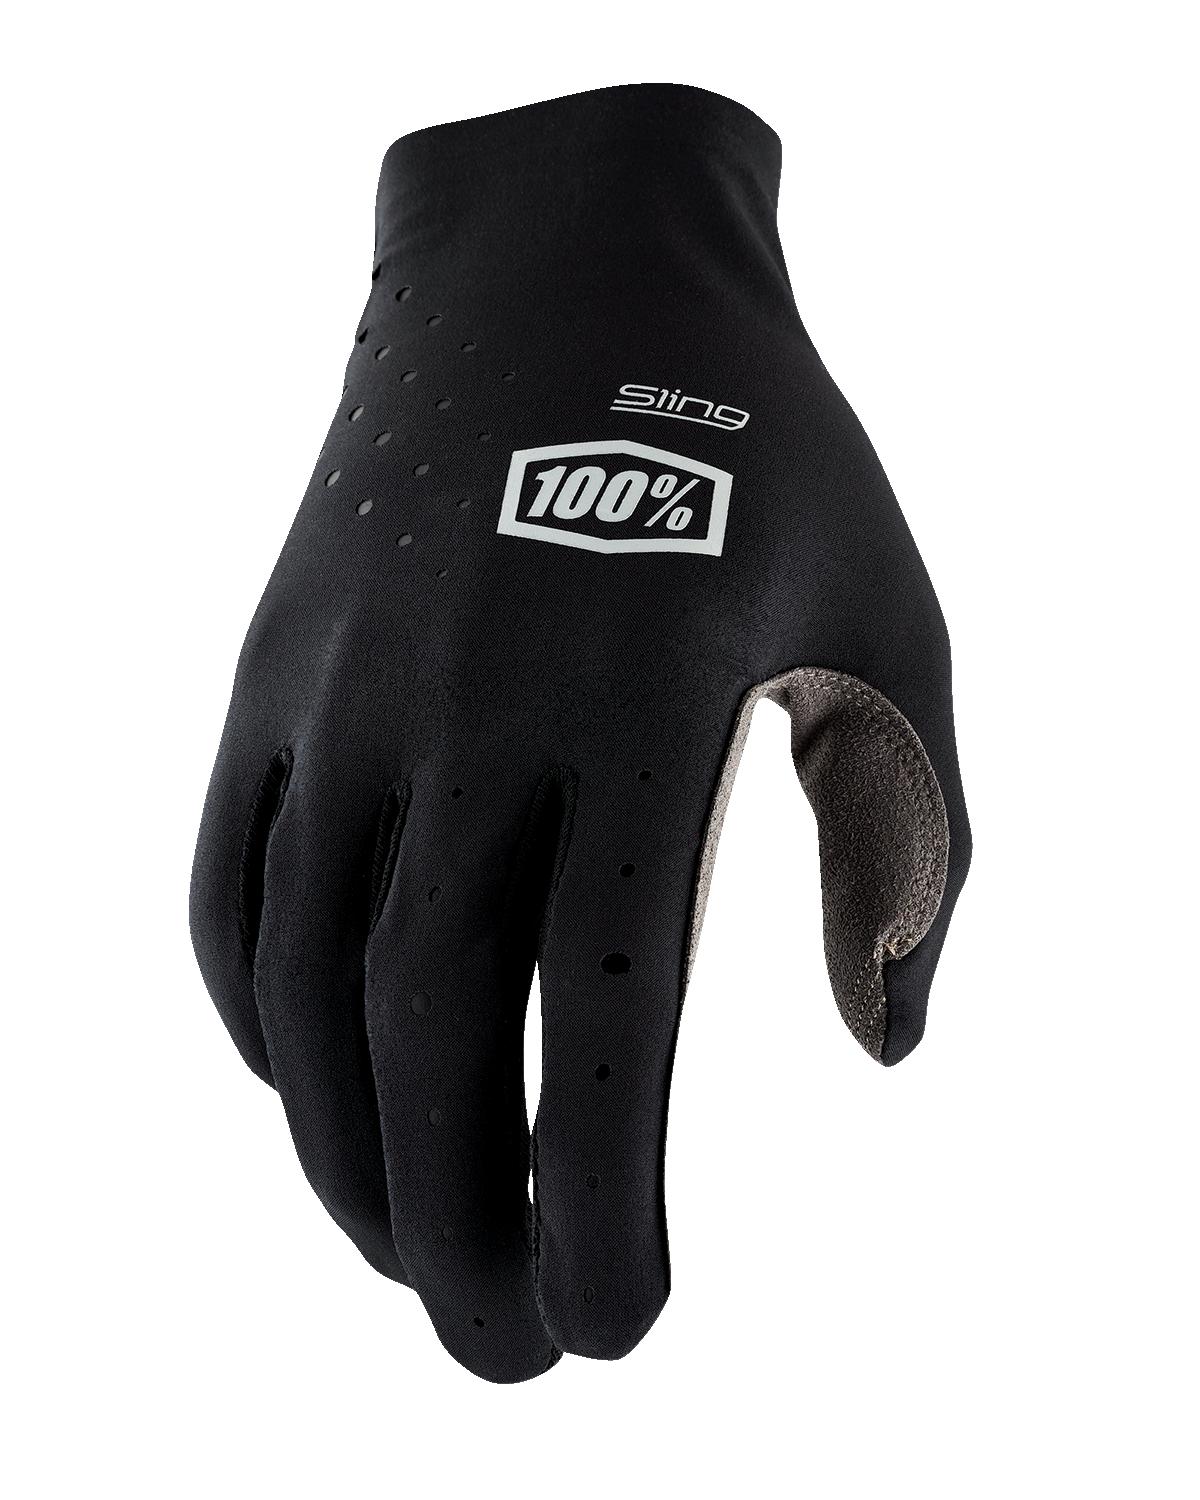 100% Sling MX Gloves - Black - Medium 10023-00001